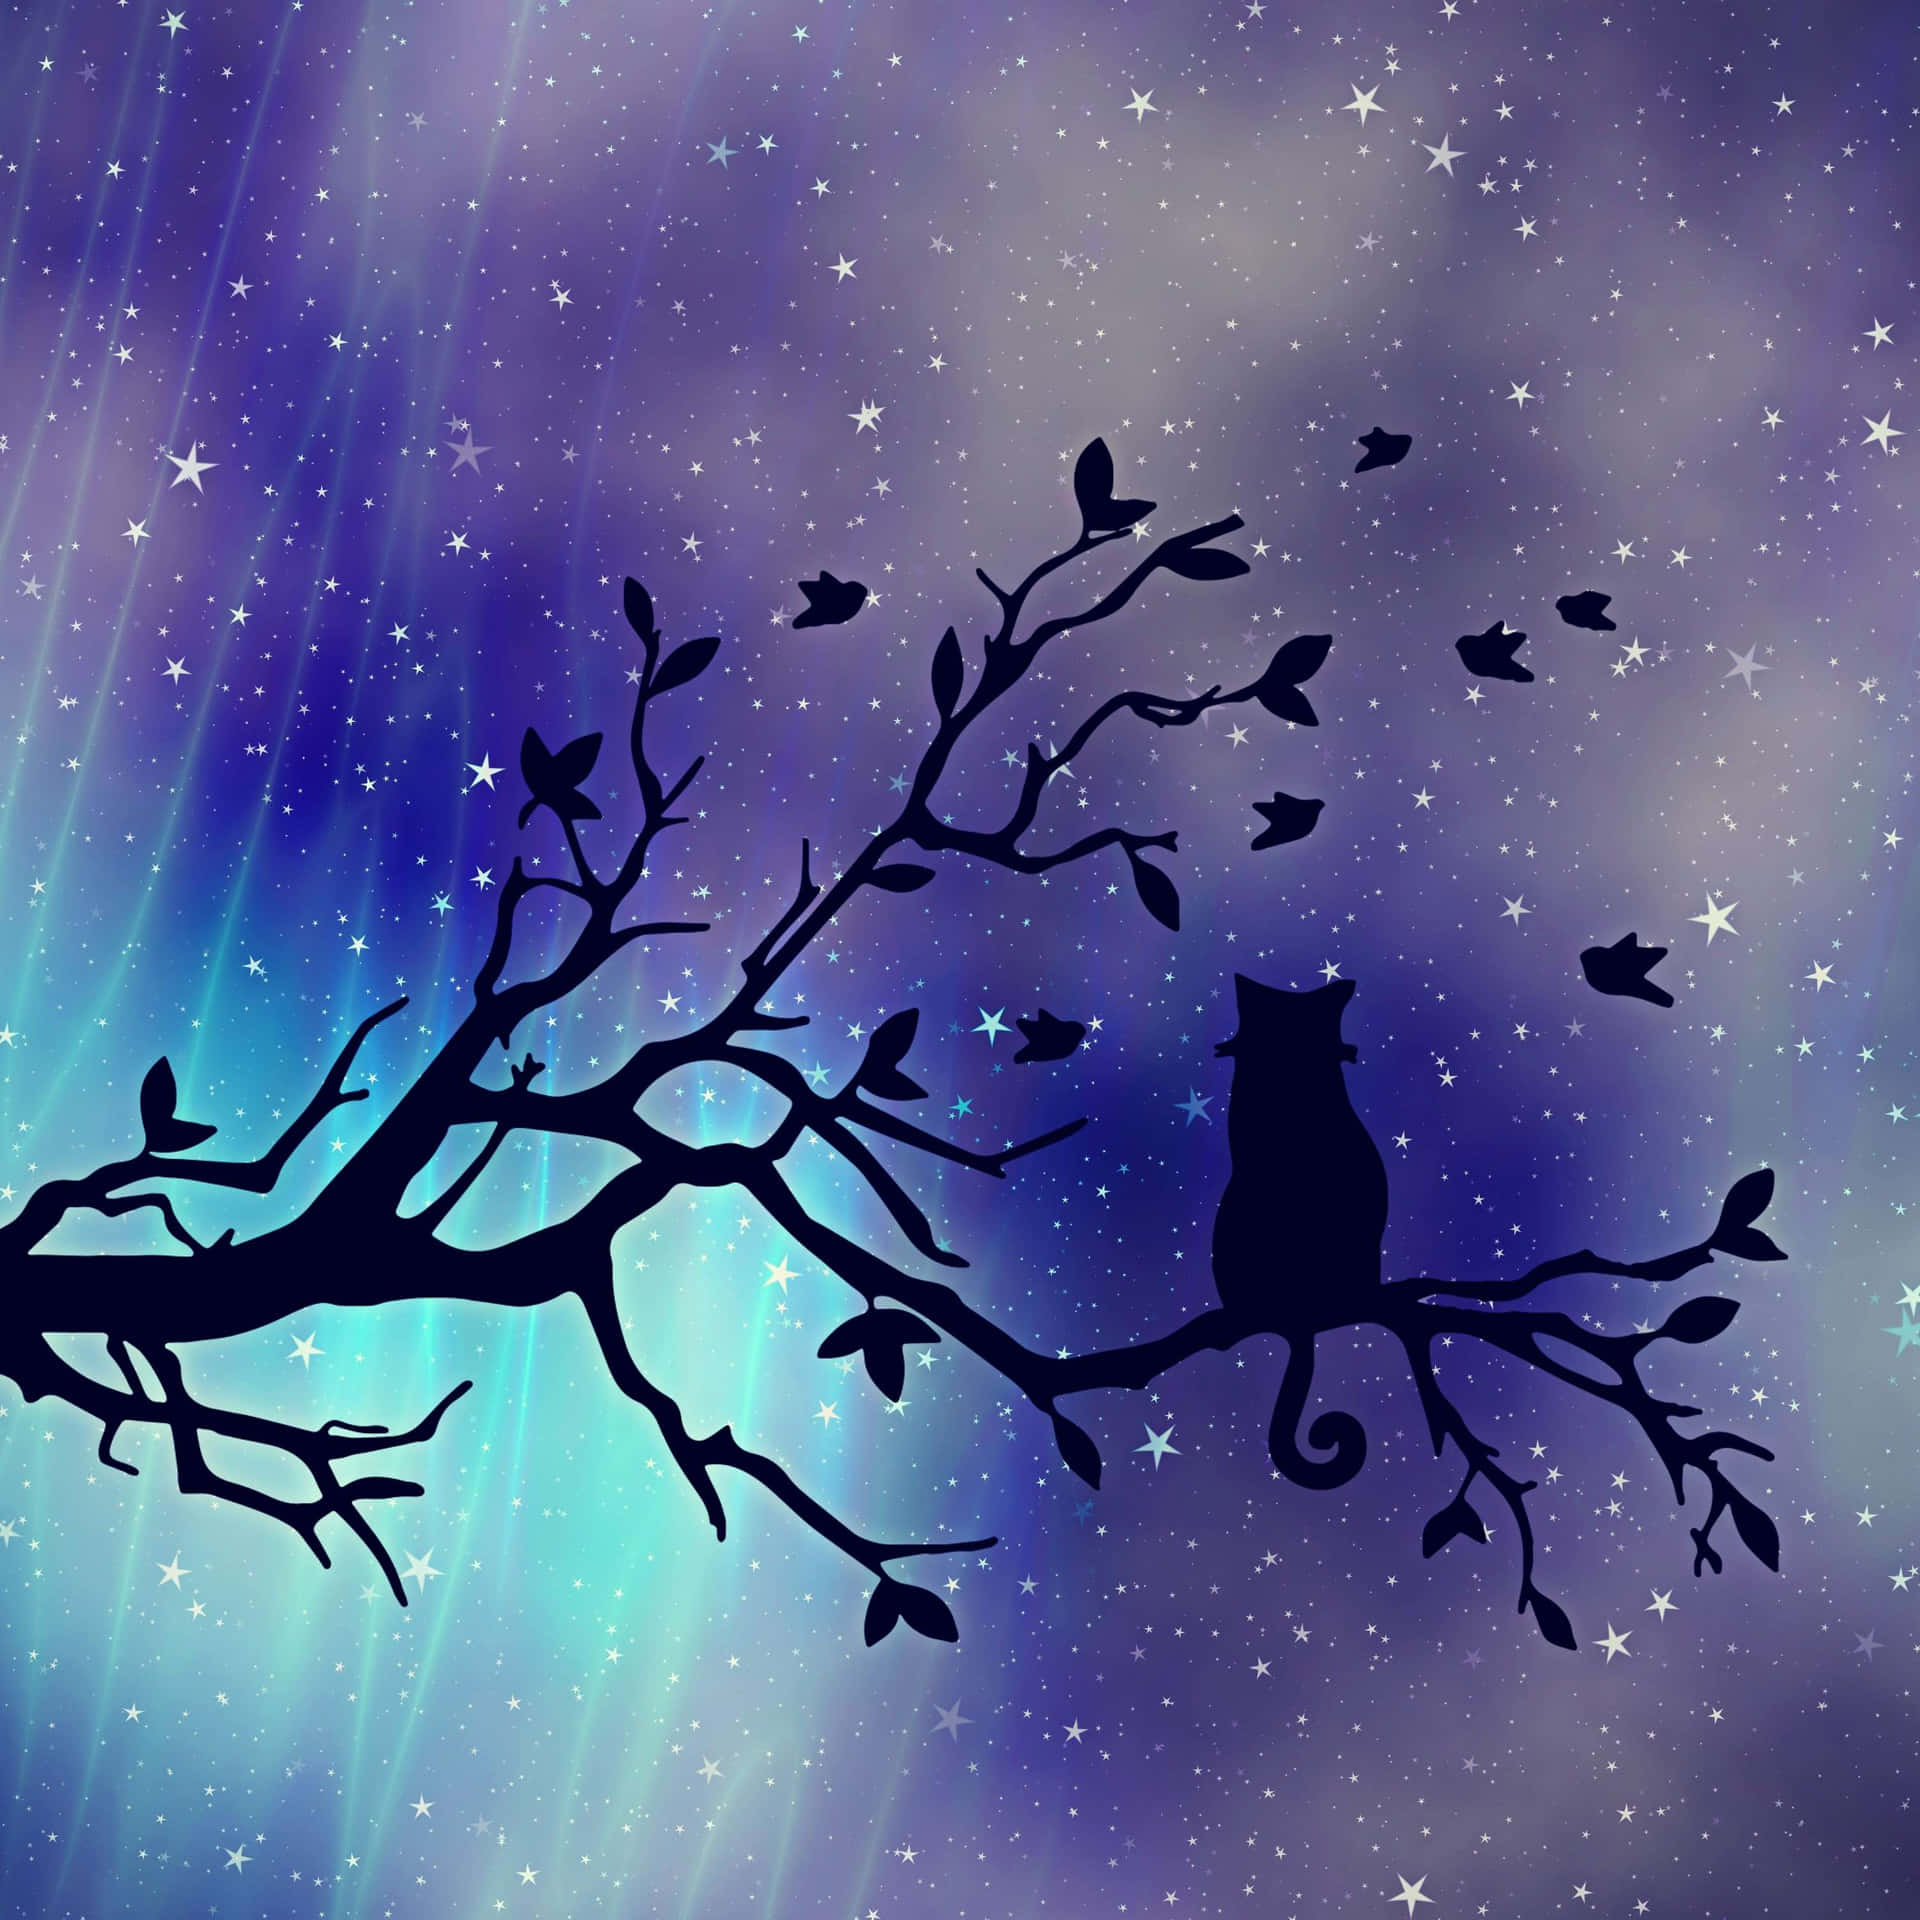 Einekatze Sitzt Auf Einem Baum Ast Mit Sternen Am Himmel. Wallpaper